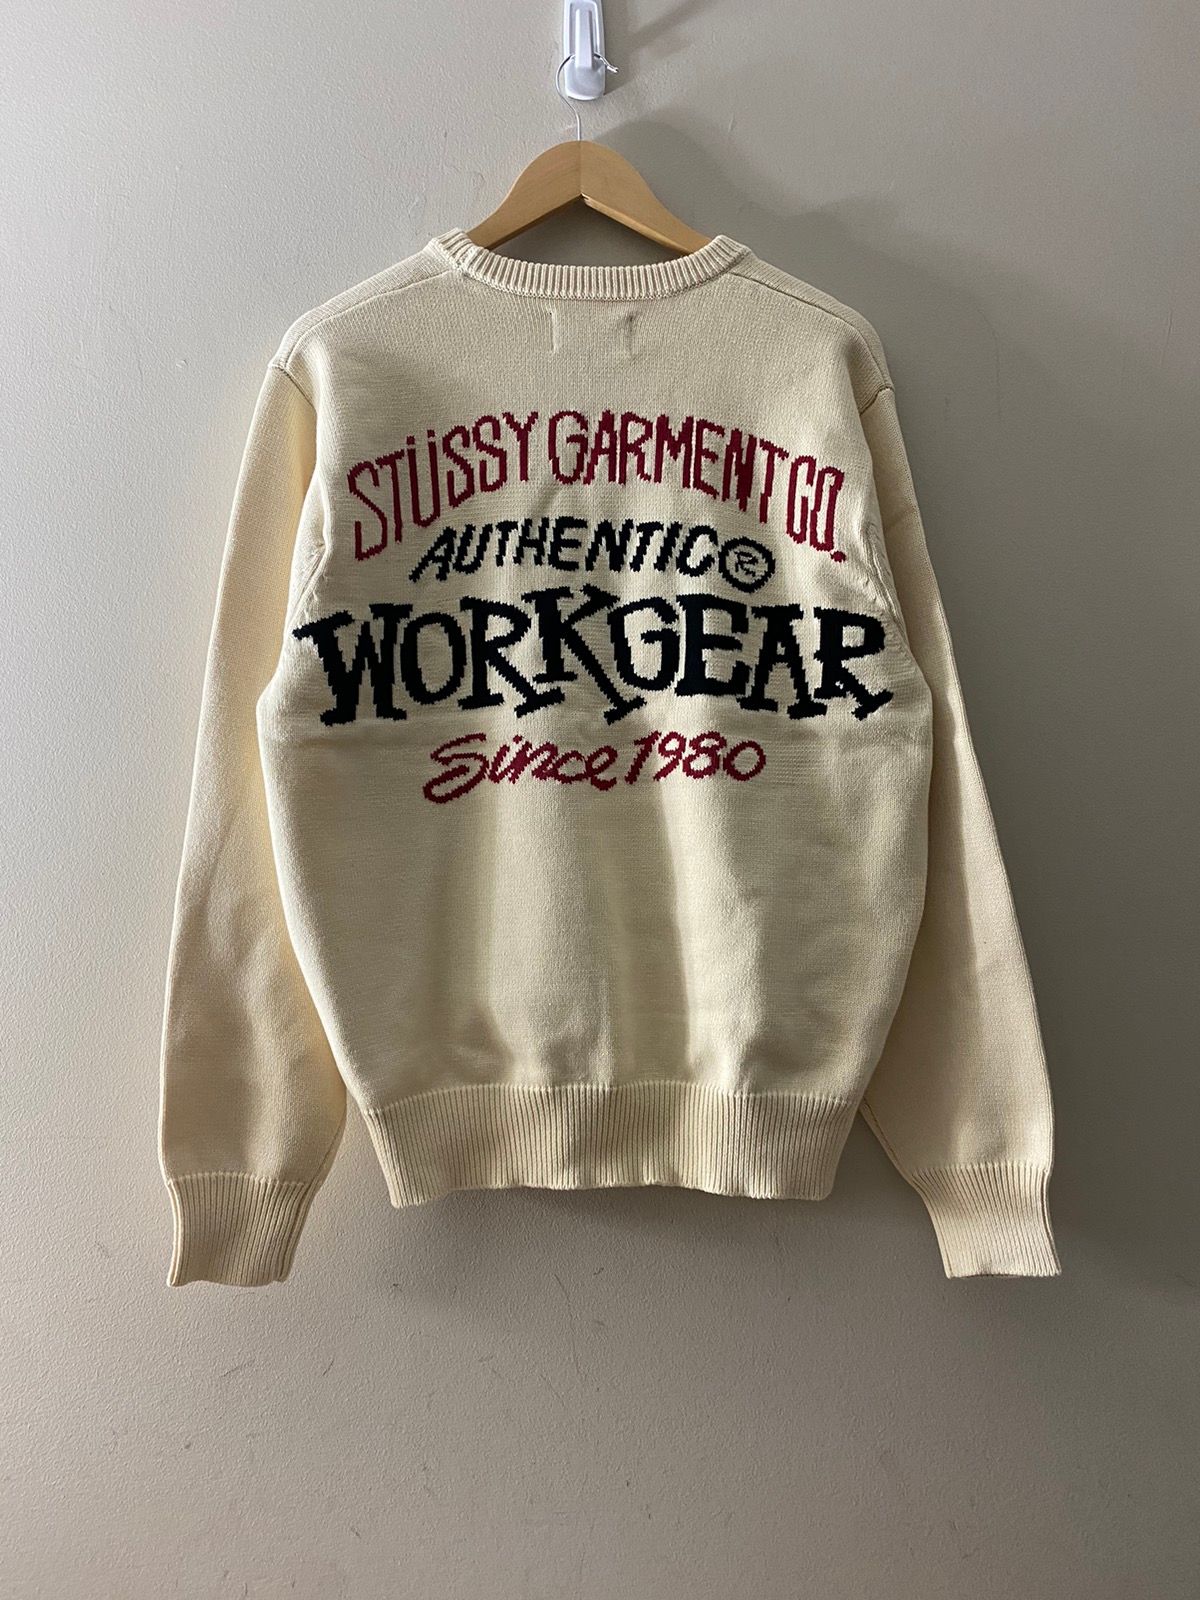 Stussy Workgear Sweater   Grailed